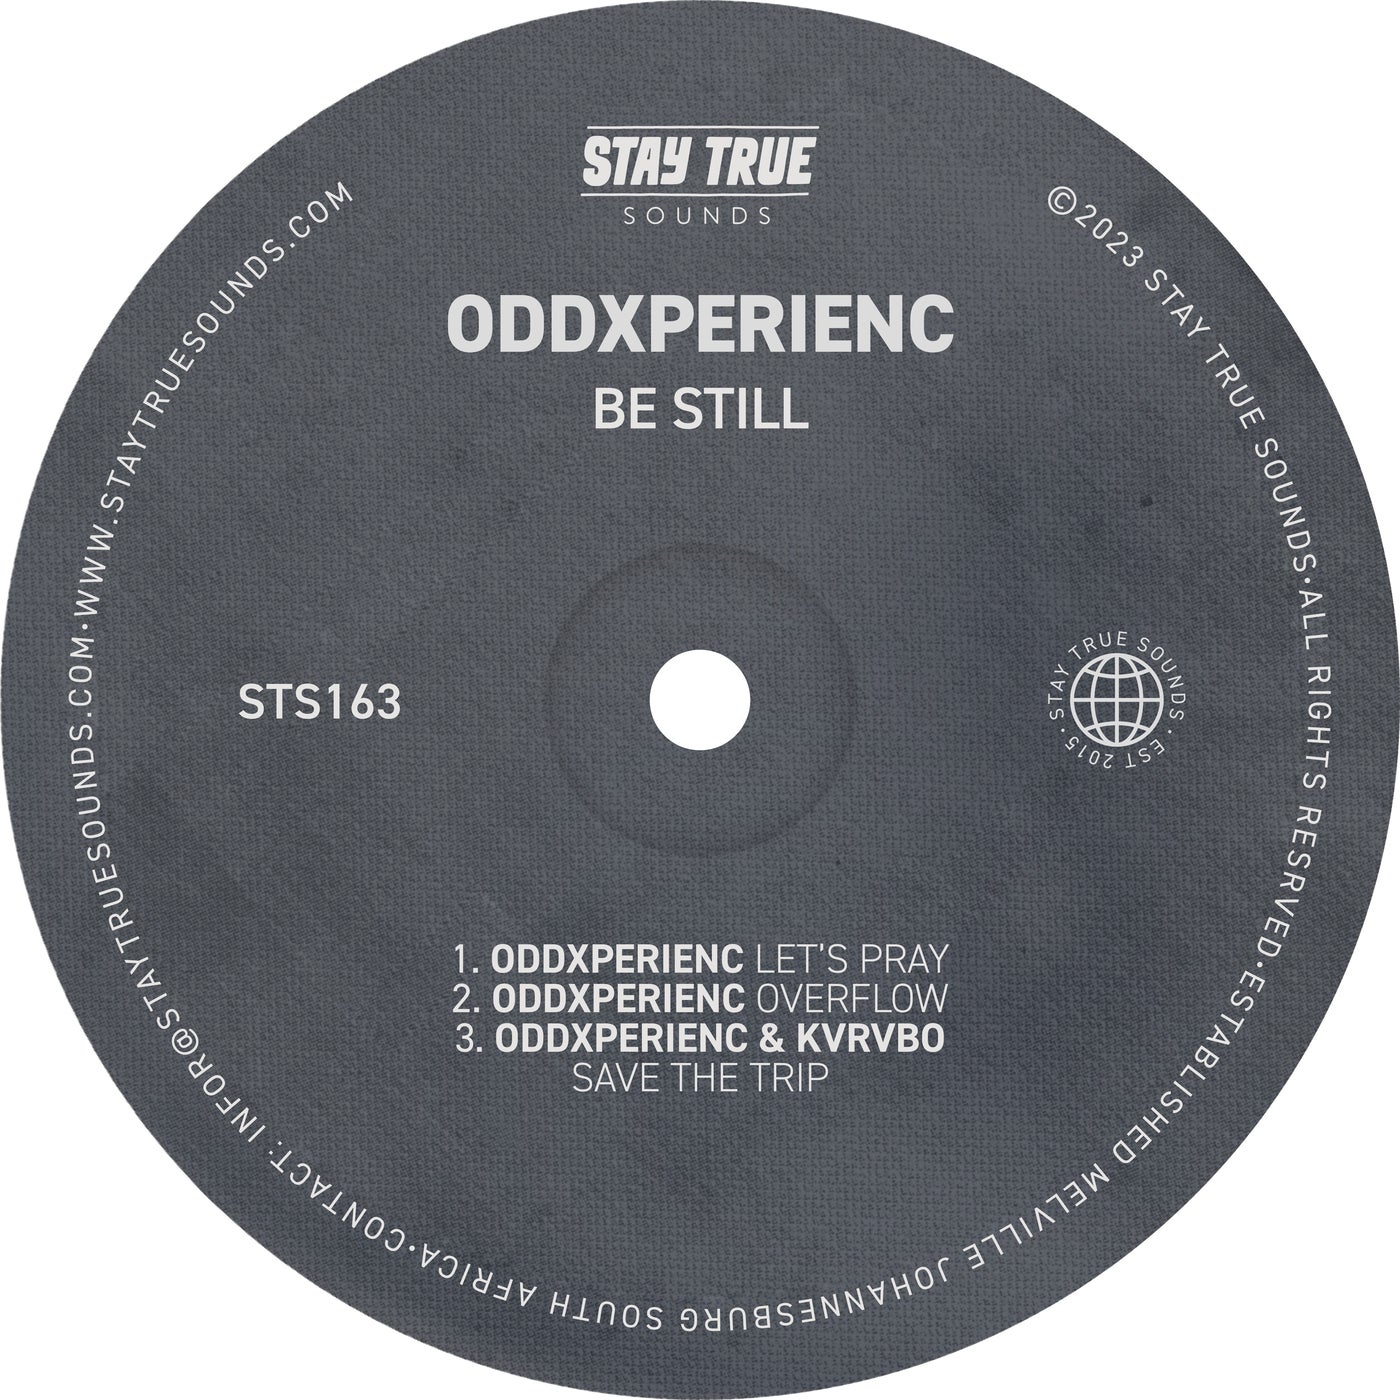 Oddxperienc - Be Still [Stay True Sounds]